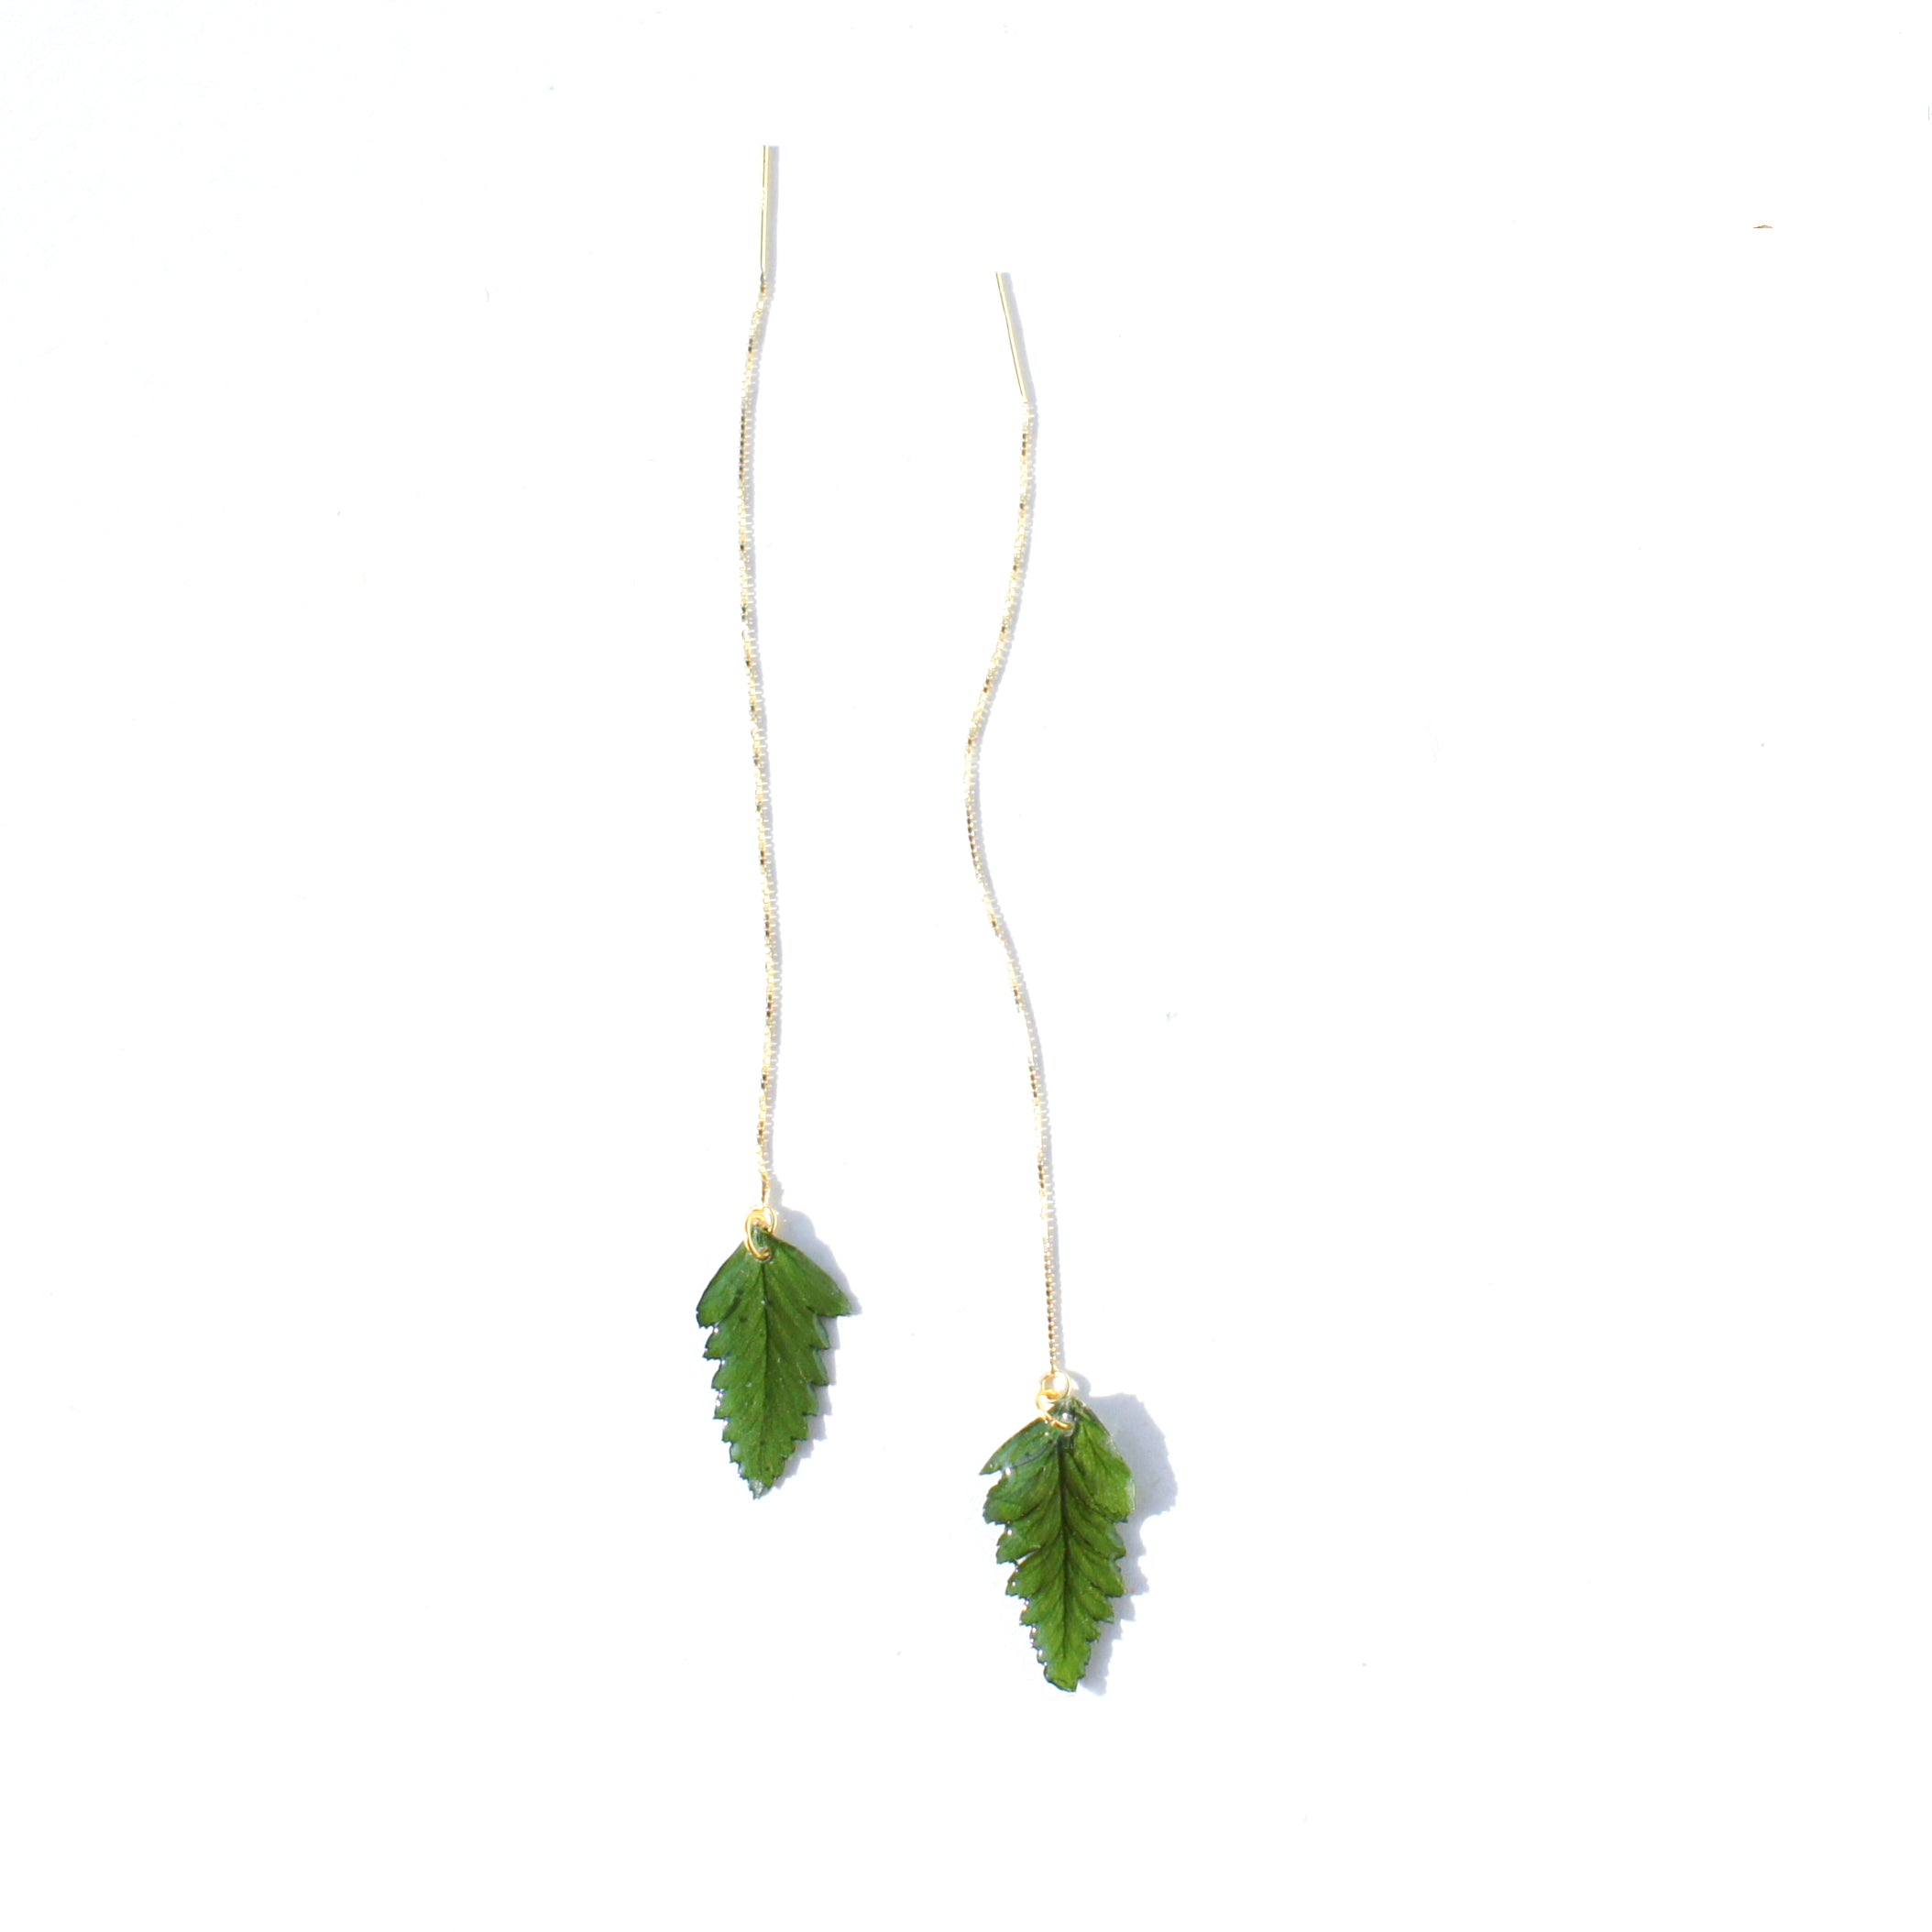 *REAL LEAVES* Be-leaf Leaf Drop 18k Gold Vermeil Threader Earring(s)